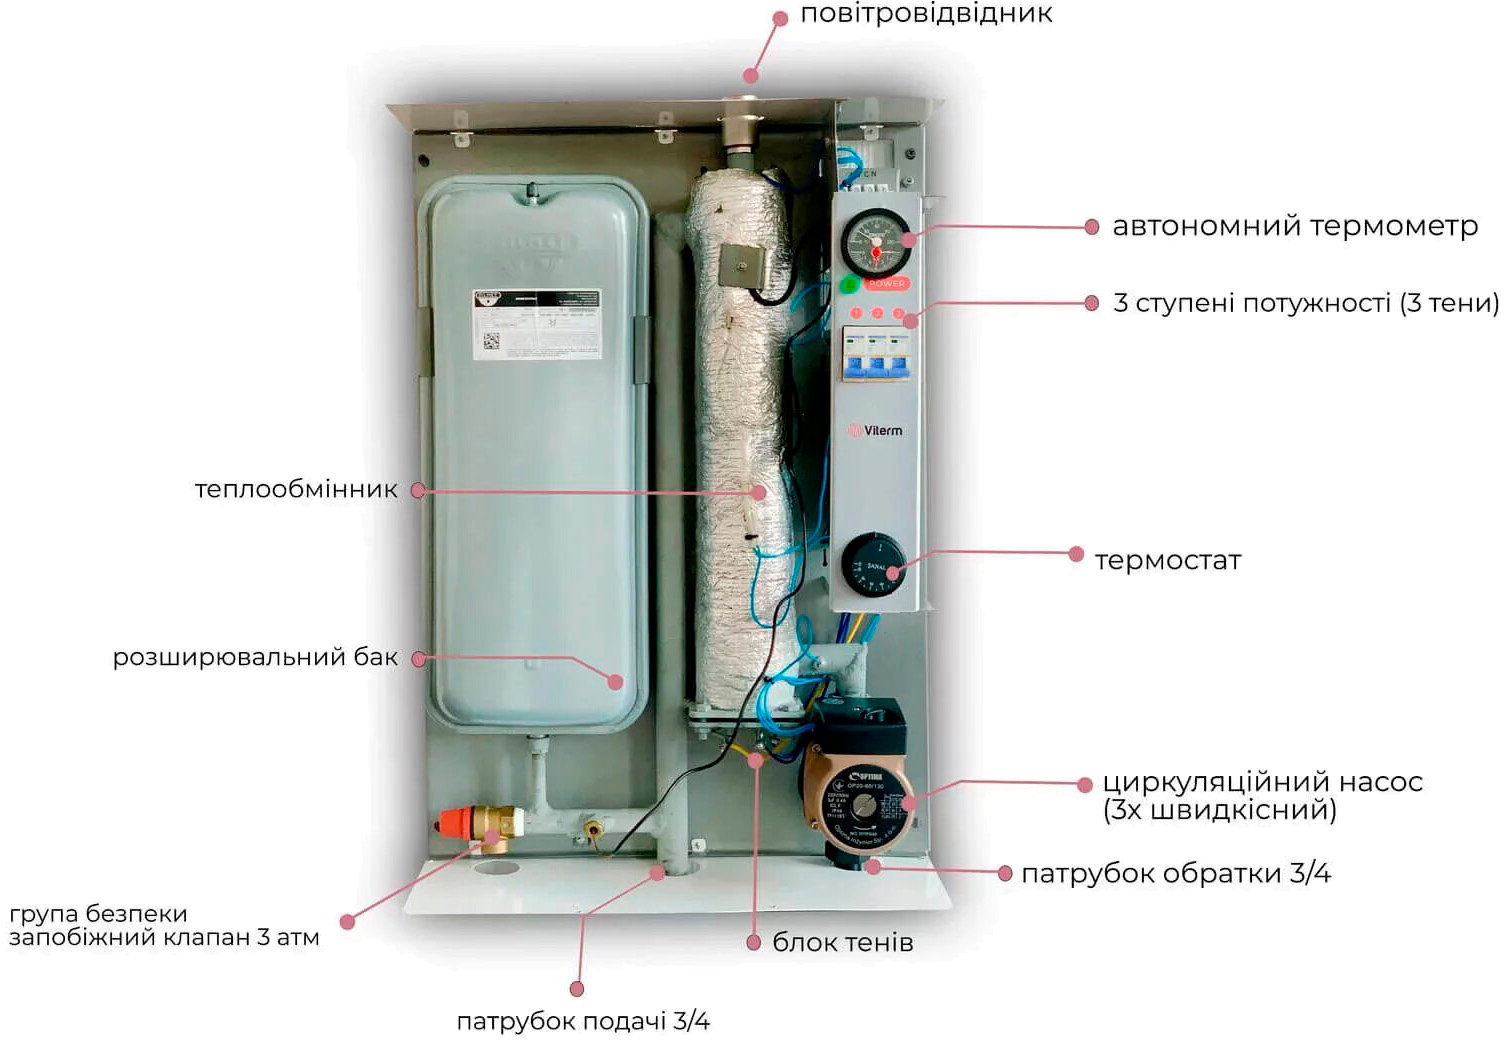 Електричний котел Viterm Max 6 кВт 220/380В (розширювальний бак + насос + група безпеки) інструкція - зображення 6